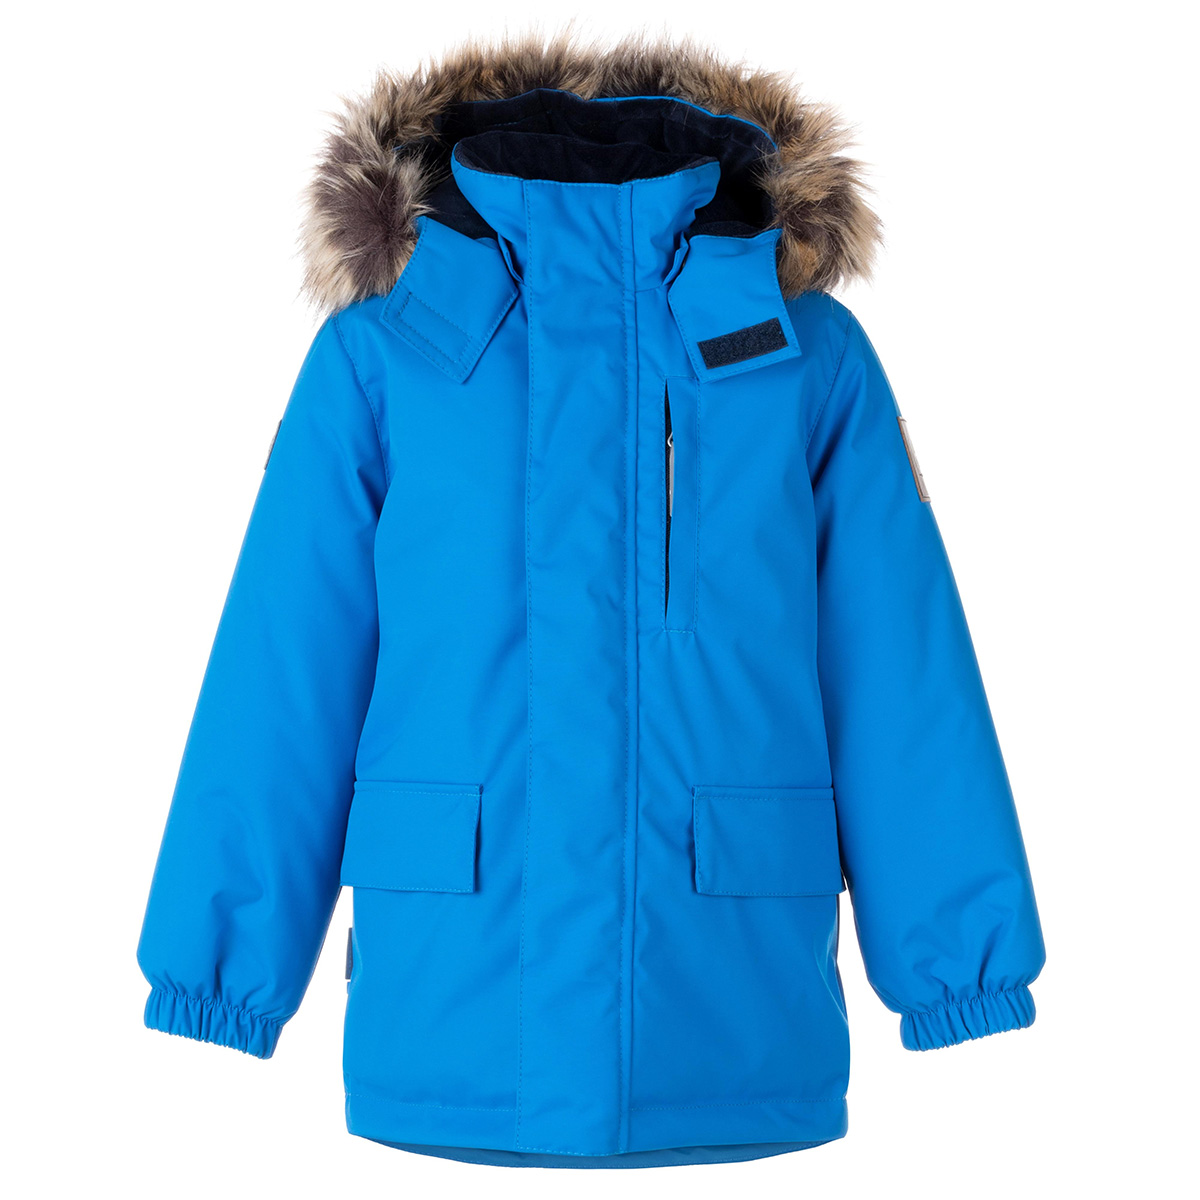 Парка детская KERRY Snow K23441, 658-светло-синий, 128 куртка quiksilver travis rice snow jacket for boy s insignia blue р 12